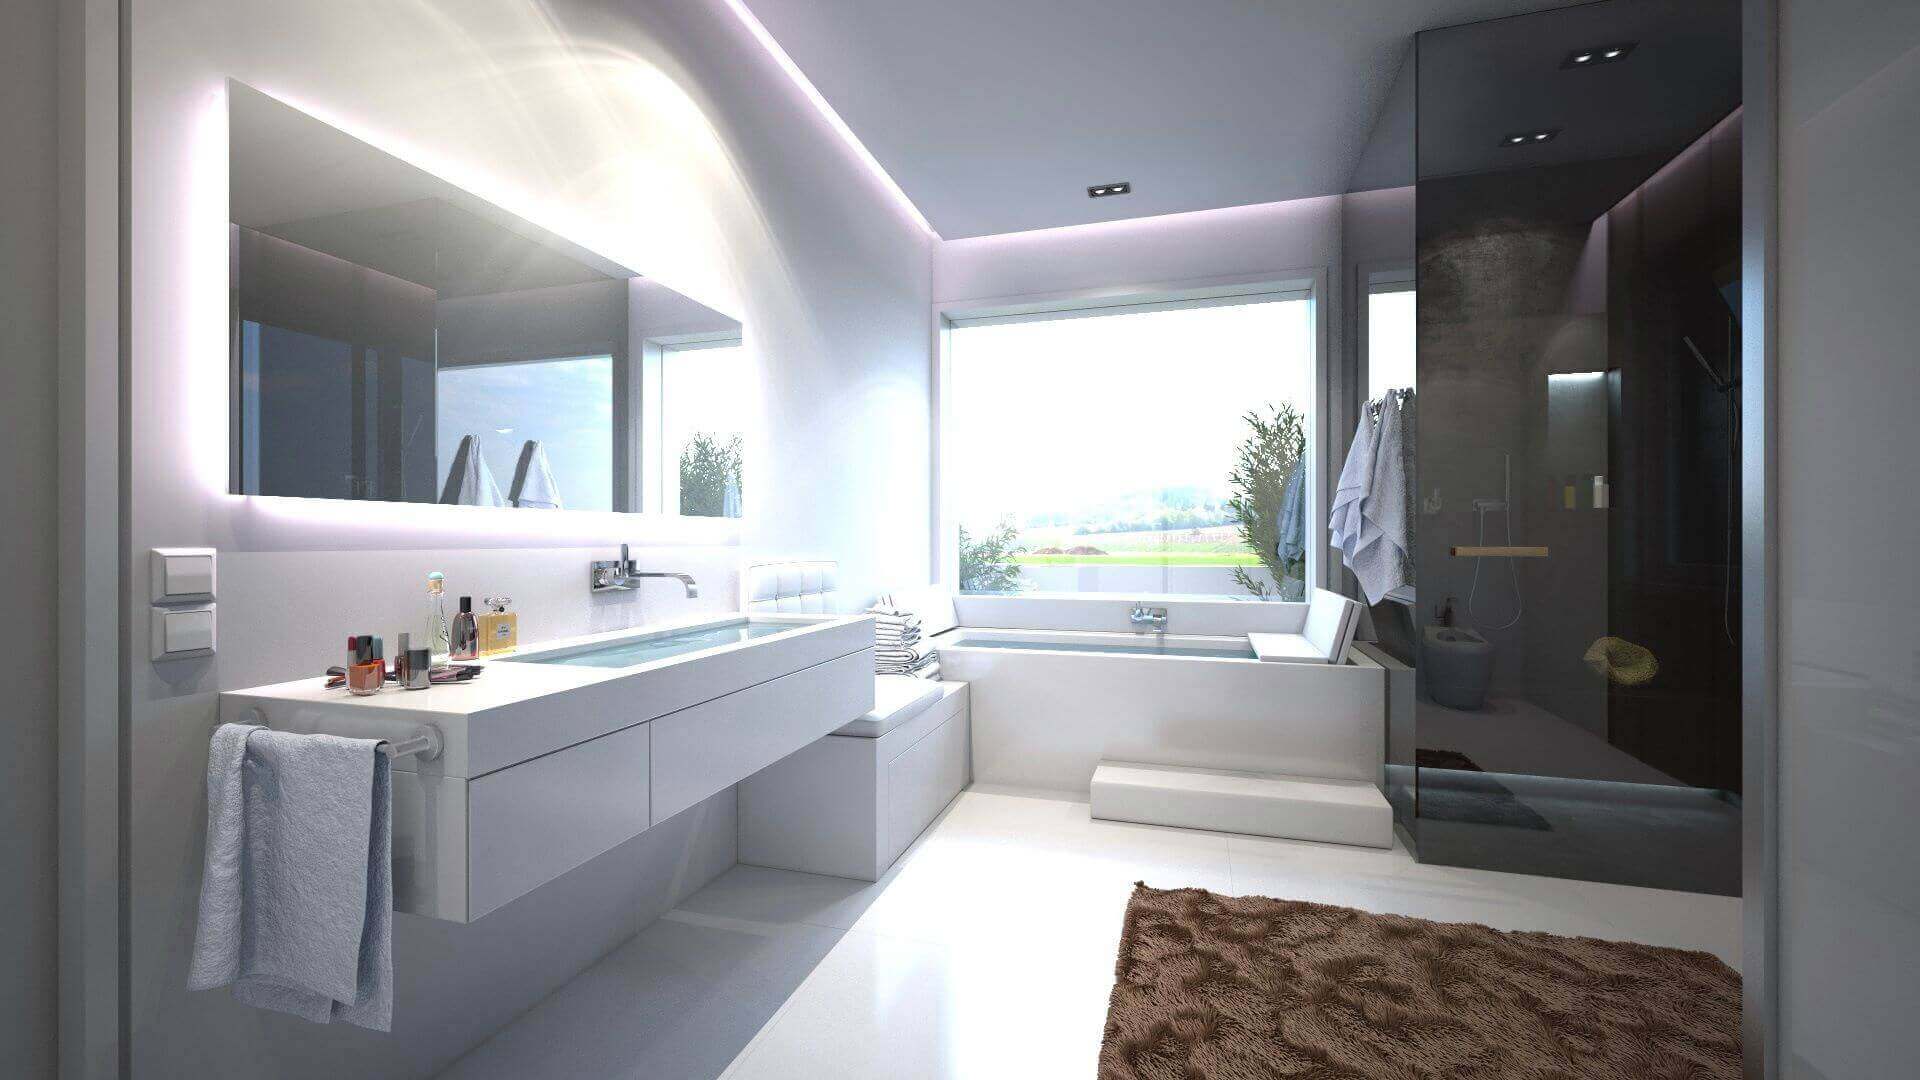 Badezimmer in schwarz weiß mit Badewanne, Dusche und Waschbereich